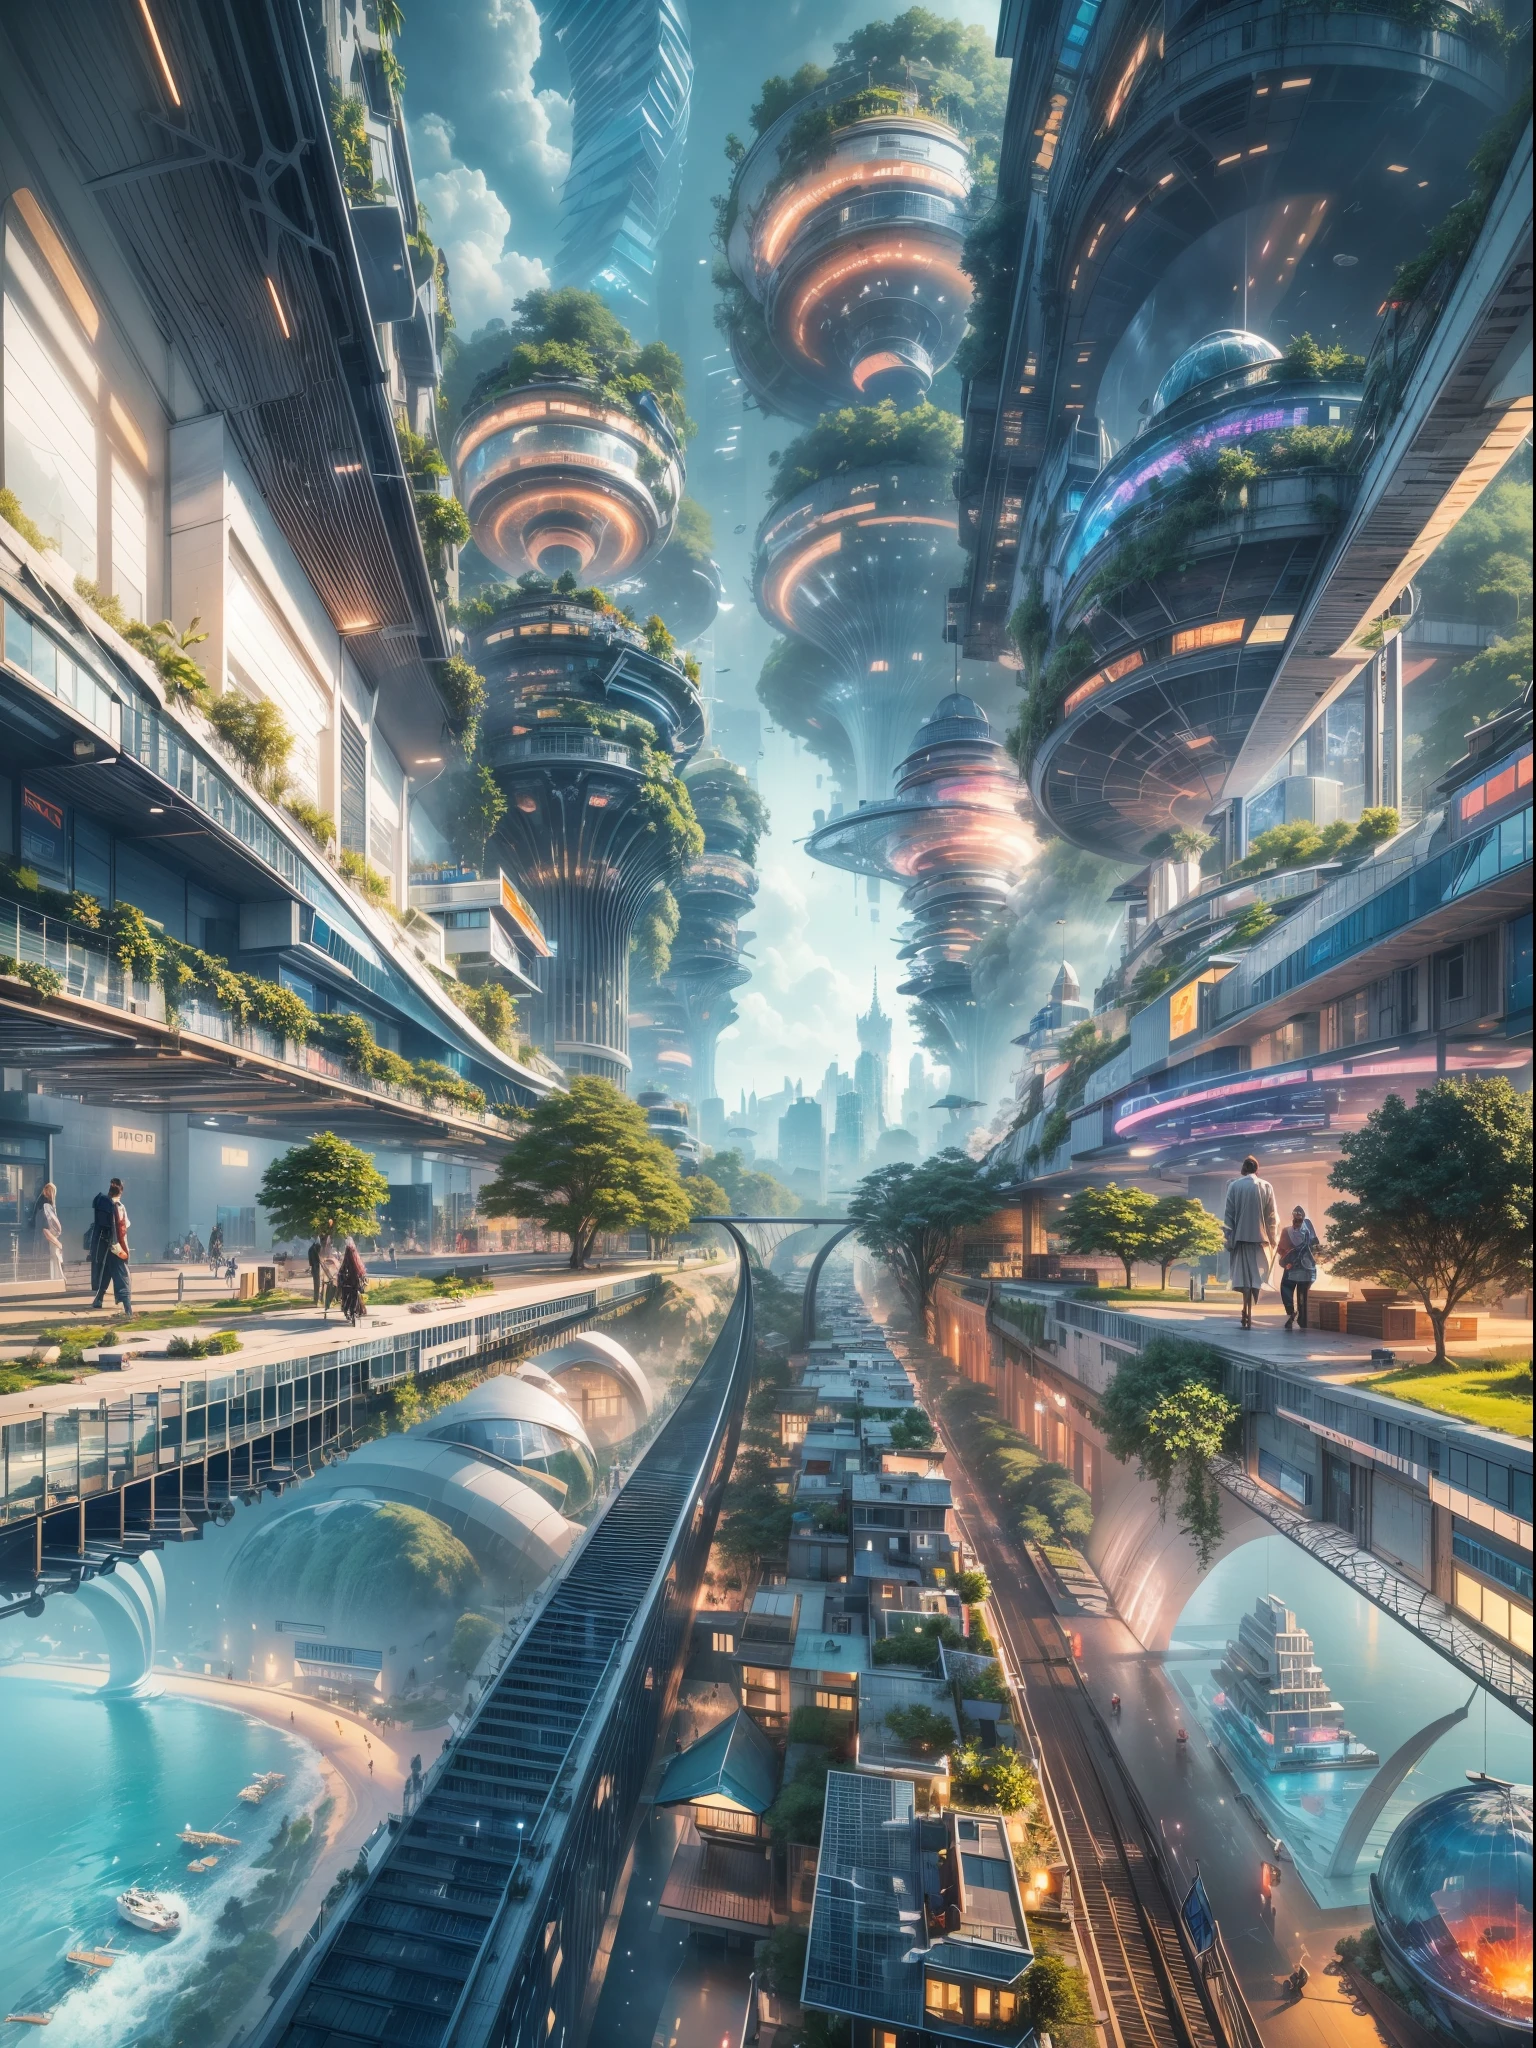 (最好的品質,4k,8K,高解析度,傑作:1.2),超詳細,(實際的,photo實際的,photo-實際的:1.37), 休息,未來漂浮城市,未来科技,巨大的高科技扁平平台上的城市,飛艇,漂浮在空中,未來城市,small 飛艇 around,高科技半球平台,彩灯,先進的架構,現代建築,摩天大樓,到達雲端,令人驚嘆的景色,城市景觀,令人印象深刻的設計,與自然無縫融合,dynamic and vibrant atmosphere 休息 futuristic transport system,懸停車輛,透明通道,郁郁葱葱的绿色植物,空中花園,瀑布,壯麗的天際線,水面上的倒影,波光粼粼的河流,建築創新,futuristic 摩天大樓,透明圓頂,形狀不尋常的建築物,高架走道,令人印象深刻的天際線,发光的灯光,未来科技,簡約設計,風景名勝,全景,穿雲塔, 休息 vibrant colors,史詩般的日出,史詩般的日落,令人眼花撩亂的燈光展示,神奇的氛围,未來之城,城市烏托邦,奢華的生活方式,創新能源,永續發展,智慧城市技術,先進的基礎設施,宁静的气氛,自然與科技和諧共存,令人驚嘆的城市景觀,前所未有的都市規劃,建築與自然的無縫連接,高科技大都市,尖端工程奇蹟,城市生活的未來,富有遠見的建築概念,節能建築,harmony with the environment 休息,漂浮在雲層之上的城市,烏托邦夢想變成現實,無限的可能性,先進的交通網絡,綠色能源融合,創新材料,令人印象深刻的全息顯示,先進的通訊系統,令人驚嘆的鳥瞰圖,和平寧靜的環境,現代主義美學,空灵之美